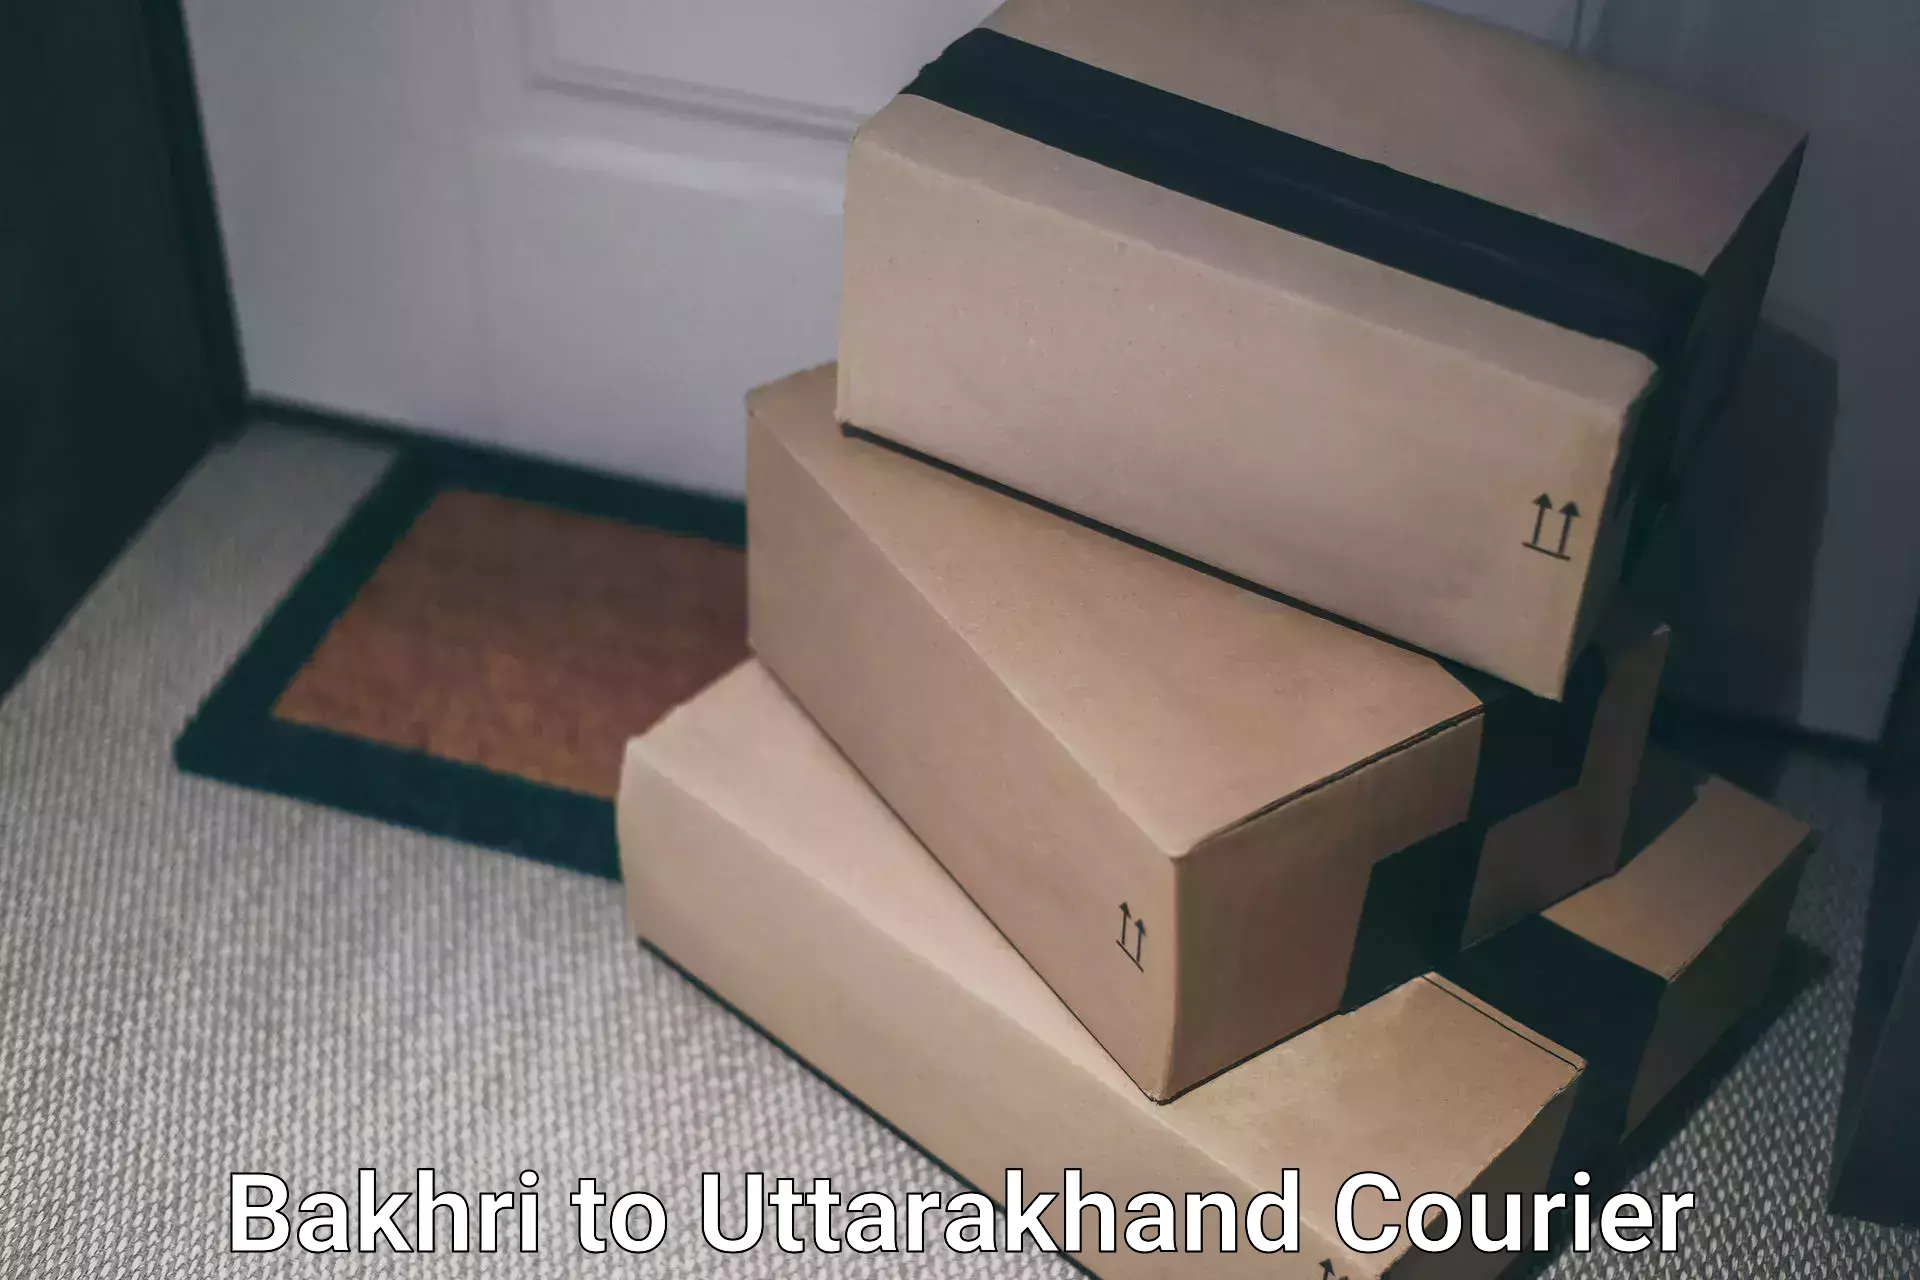 Next day courier in Bakhri to Uttarakhand